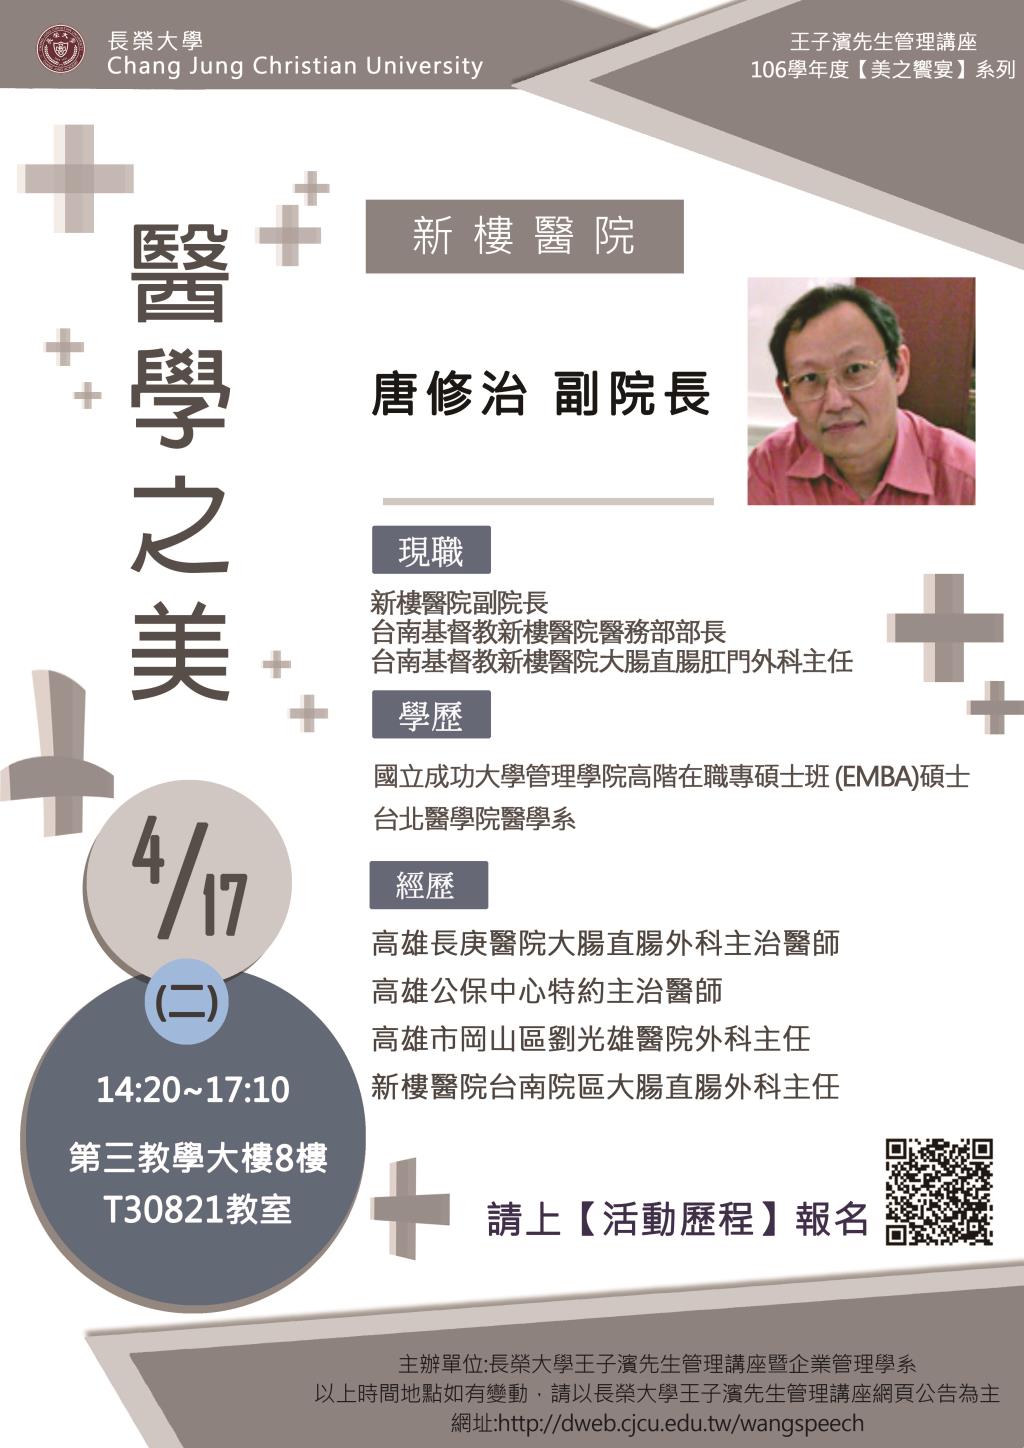 敬邀參加下週二下午(4/17)王子濱先生管理講座---新樓醫院 唐修治 副院長